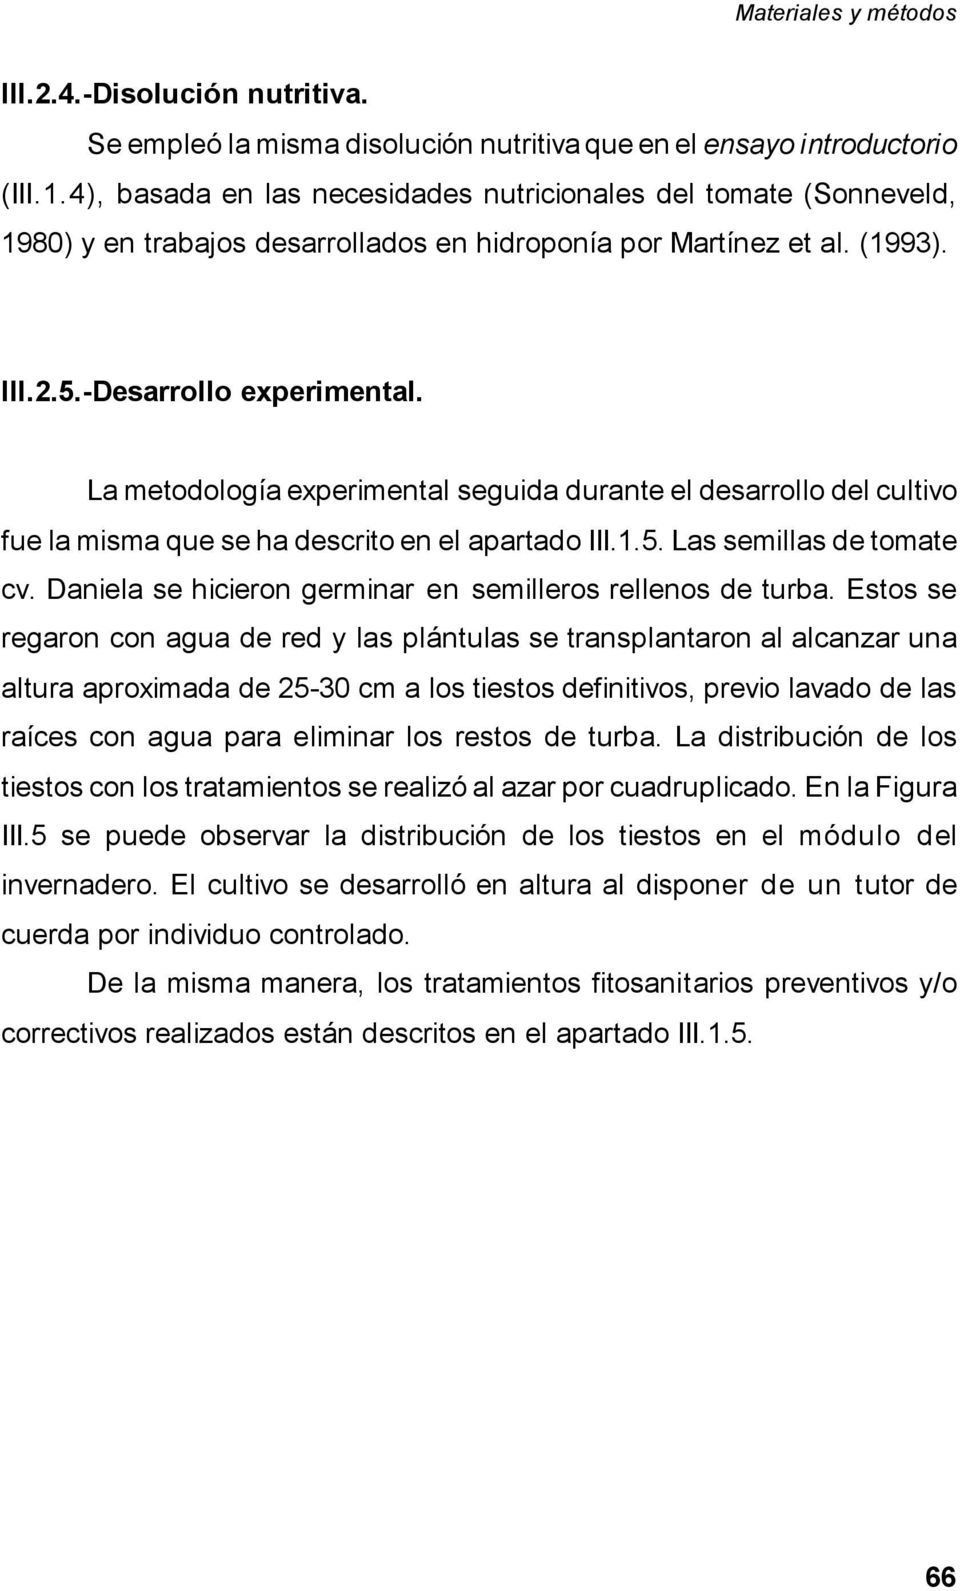 La metodología experimental seguida durante el desarrollo del cultivo fue la misma que se ha descrito en el apartado III.1.5. Las semillas de tomate cv.